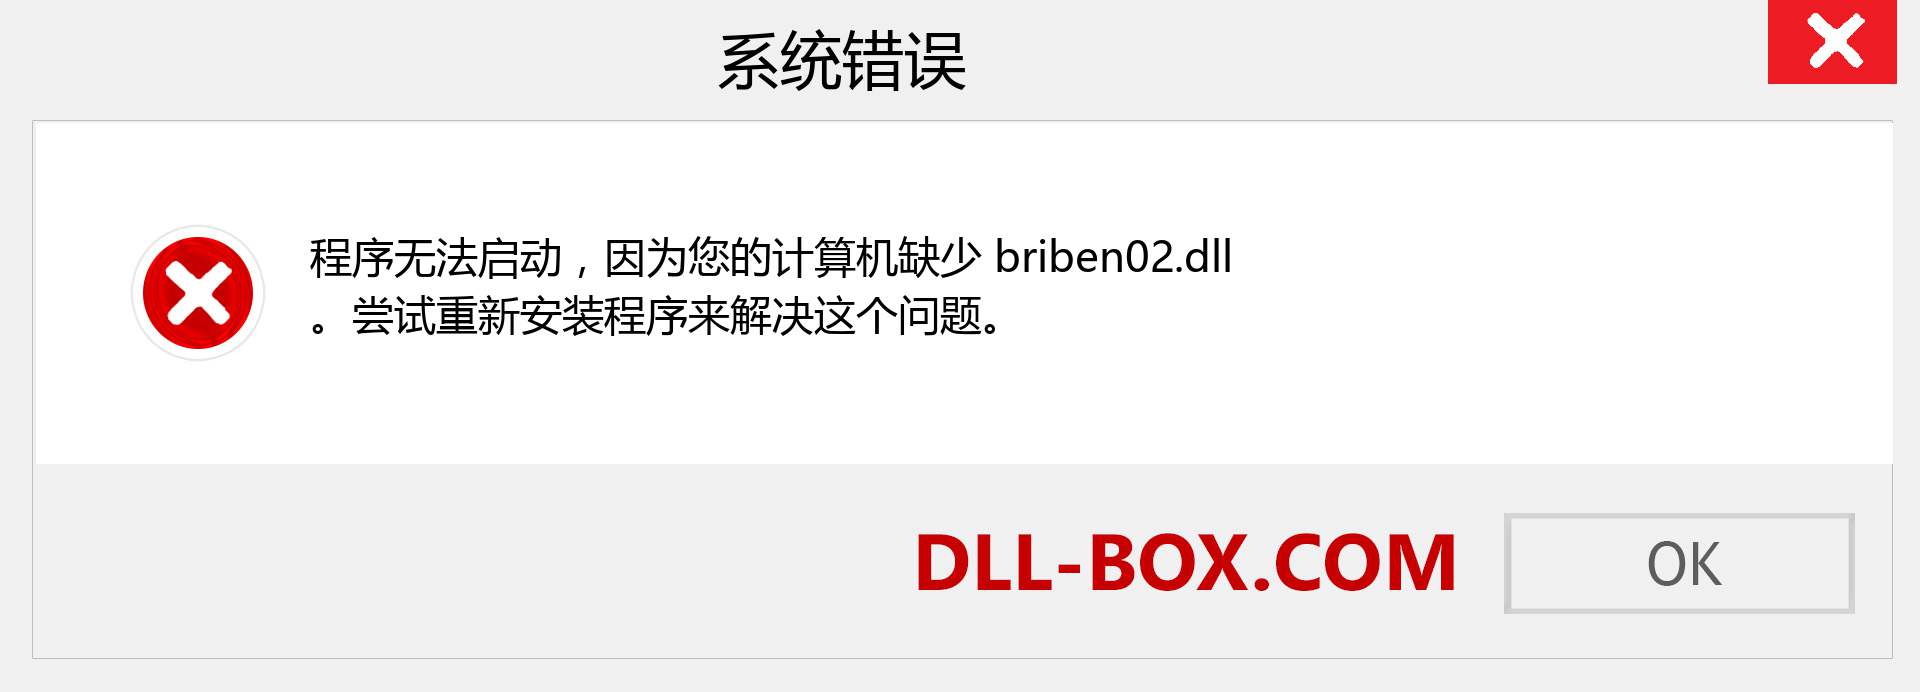 briben02.dll 文件丢失？。 适用于 Windows 7、8、10 的下载 - 修复 Windows、照片、图像上的 briben02 dll 丢失错误